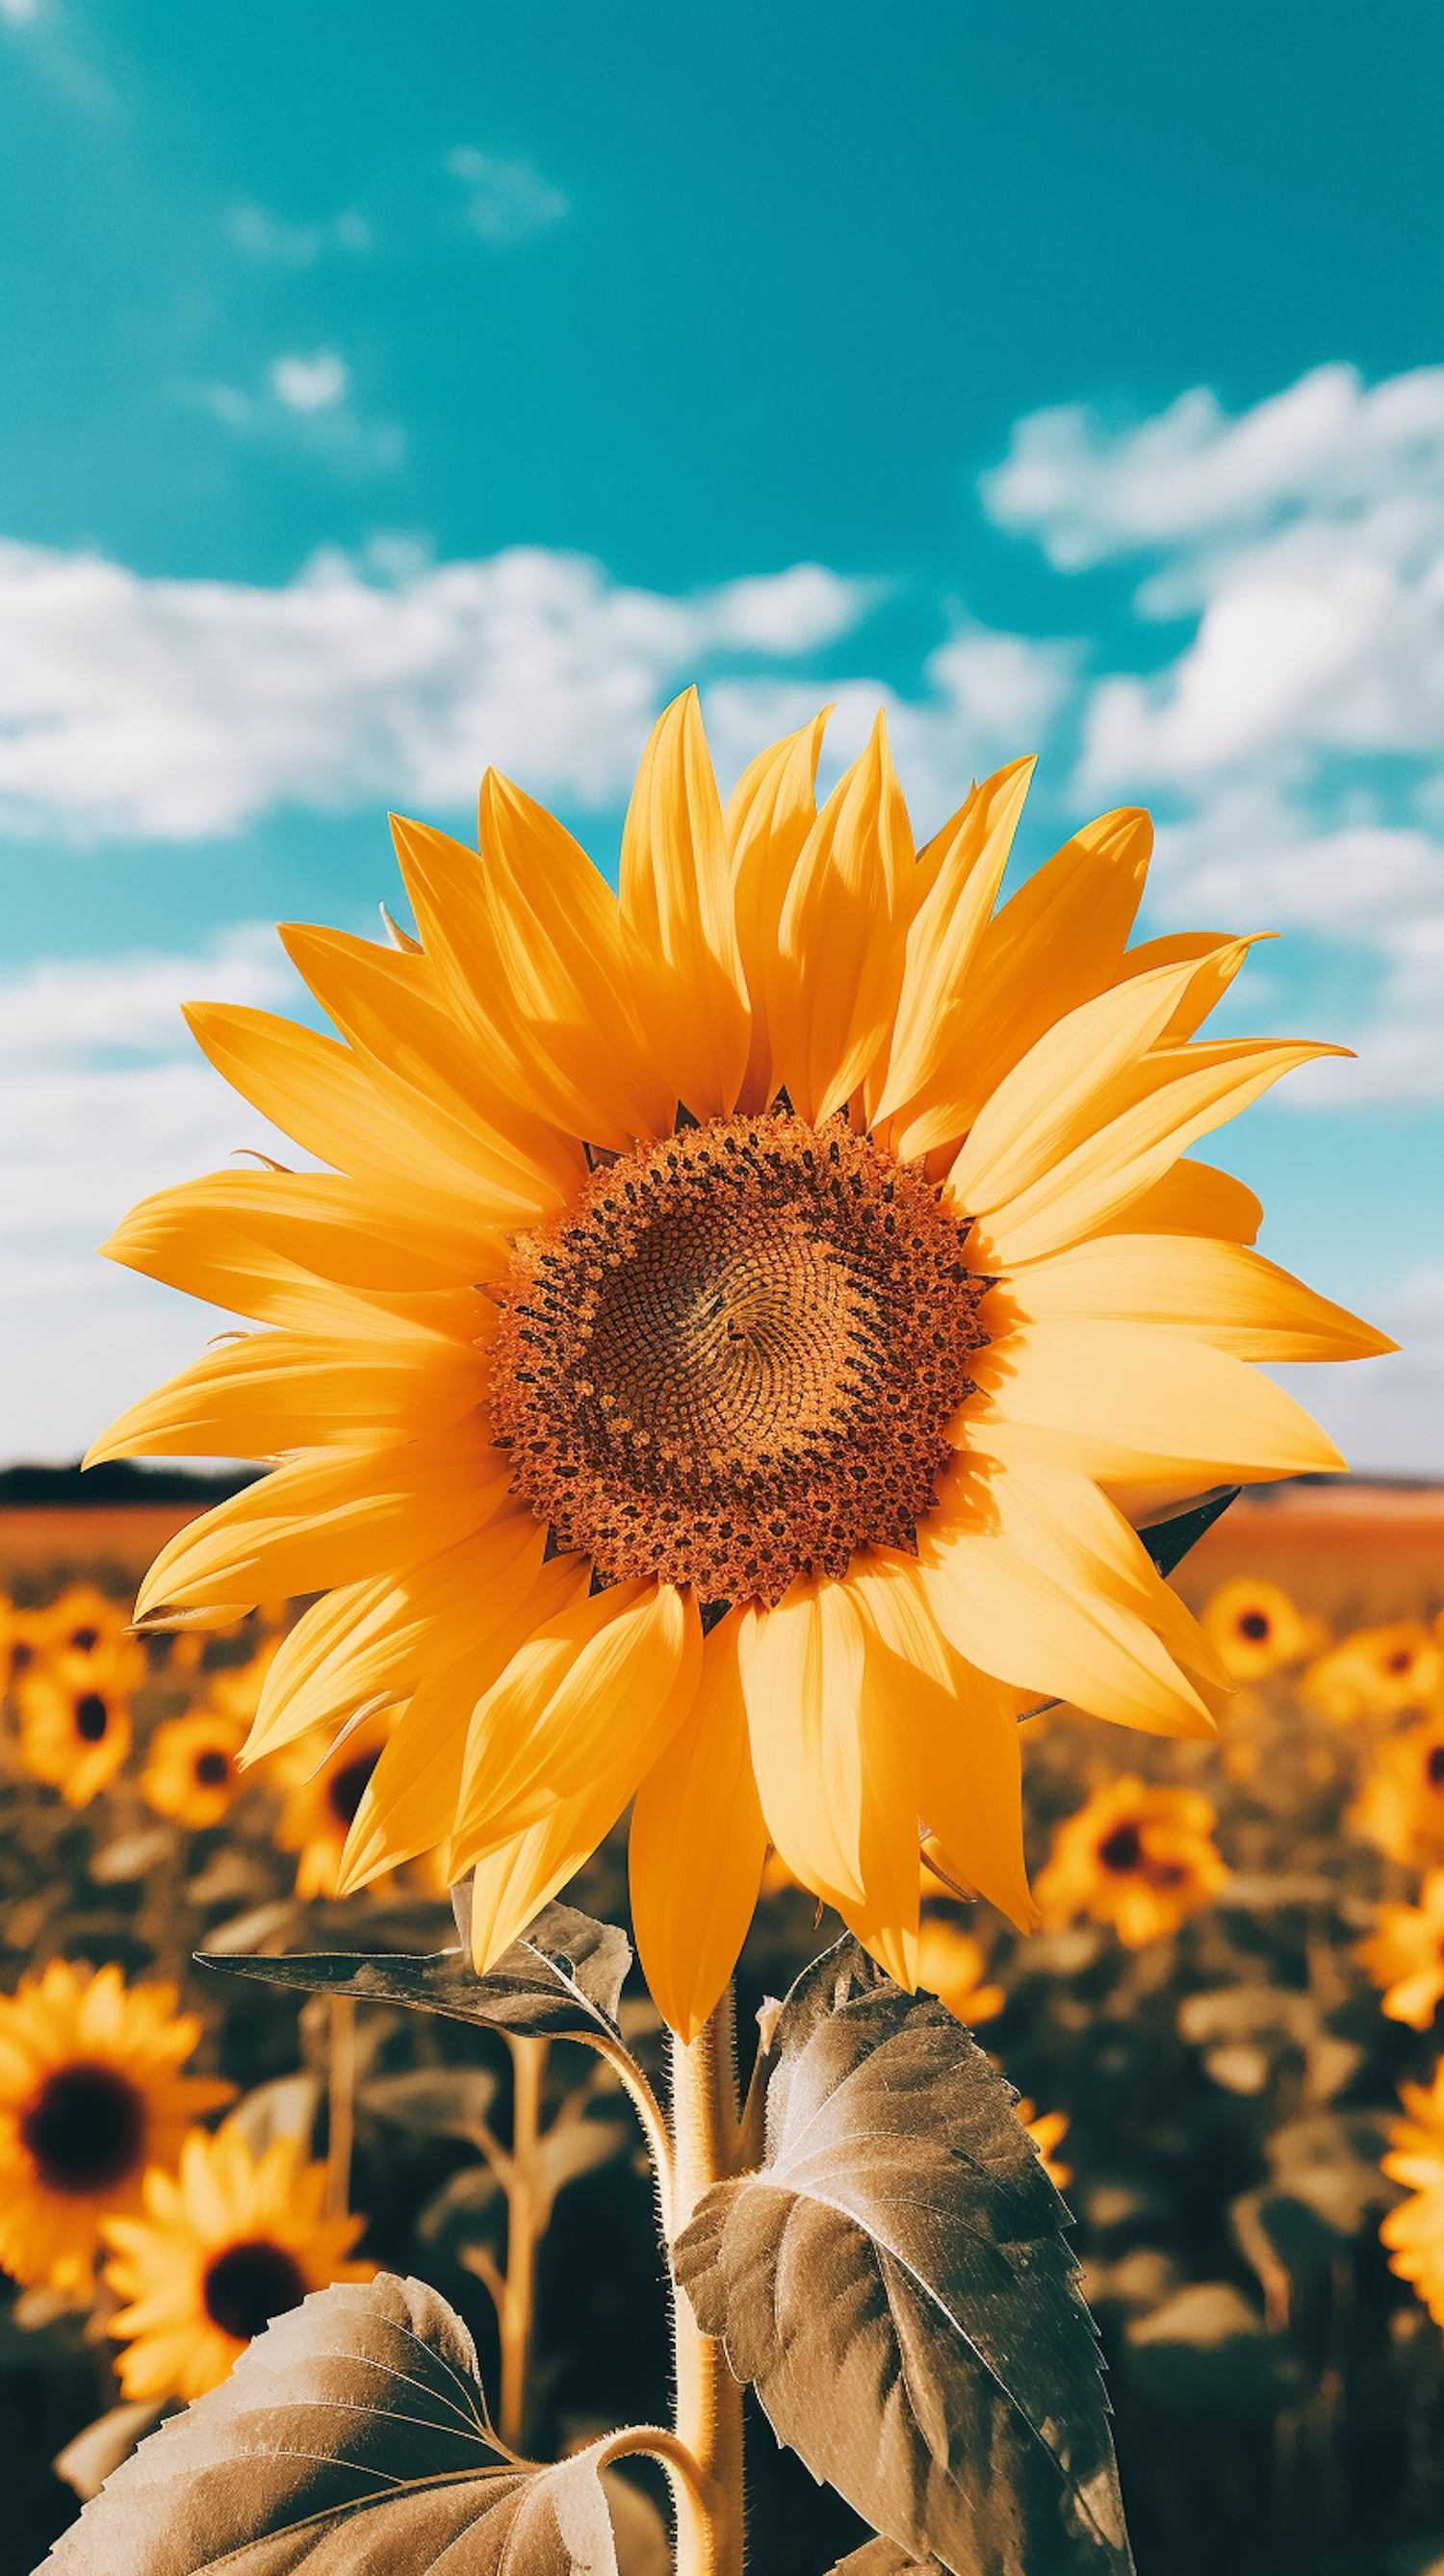 Sunflower Majesty with Sky Blue Backdrop